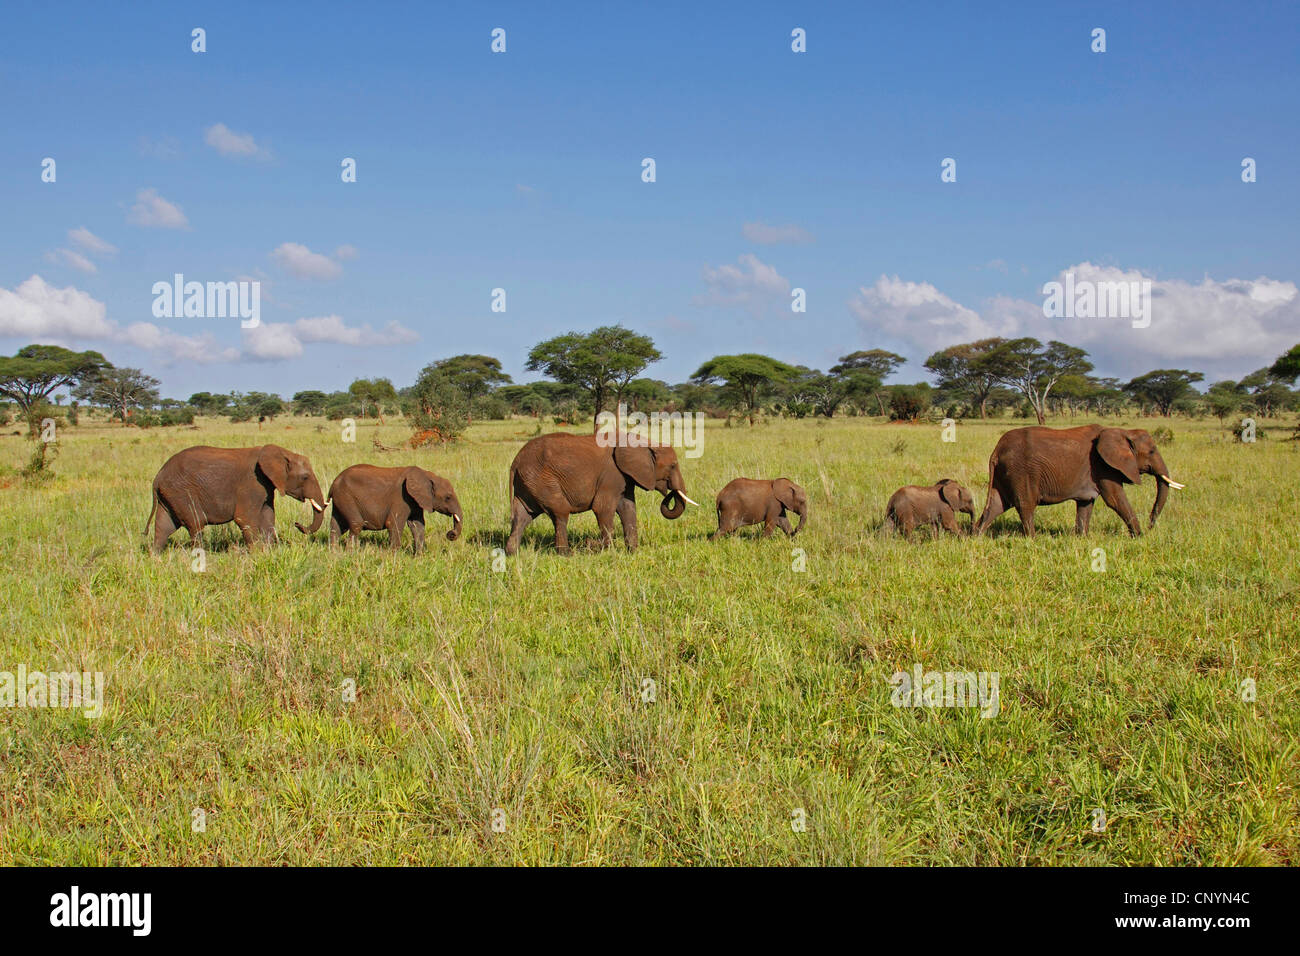 Éléphant de savane d'Afrique, l'éléphant africain (Loxodonta africana oxyotis), troupeau de jeunes animaux balade dans la savane, la Tanzanie, le parc national de Tarangire Banque D'Images